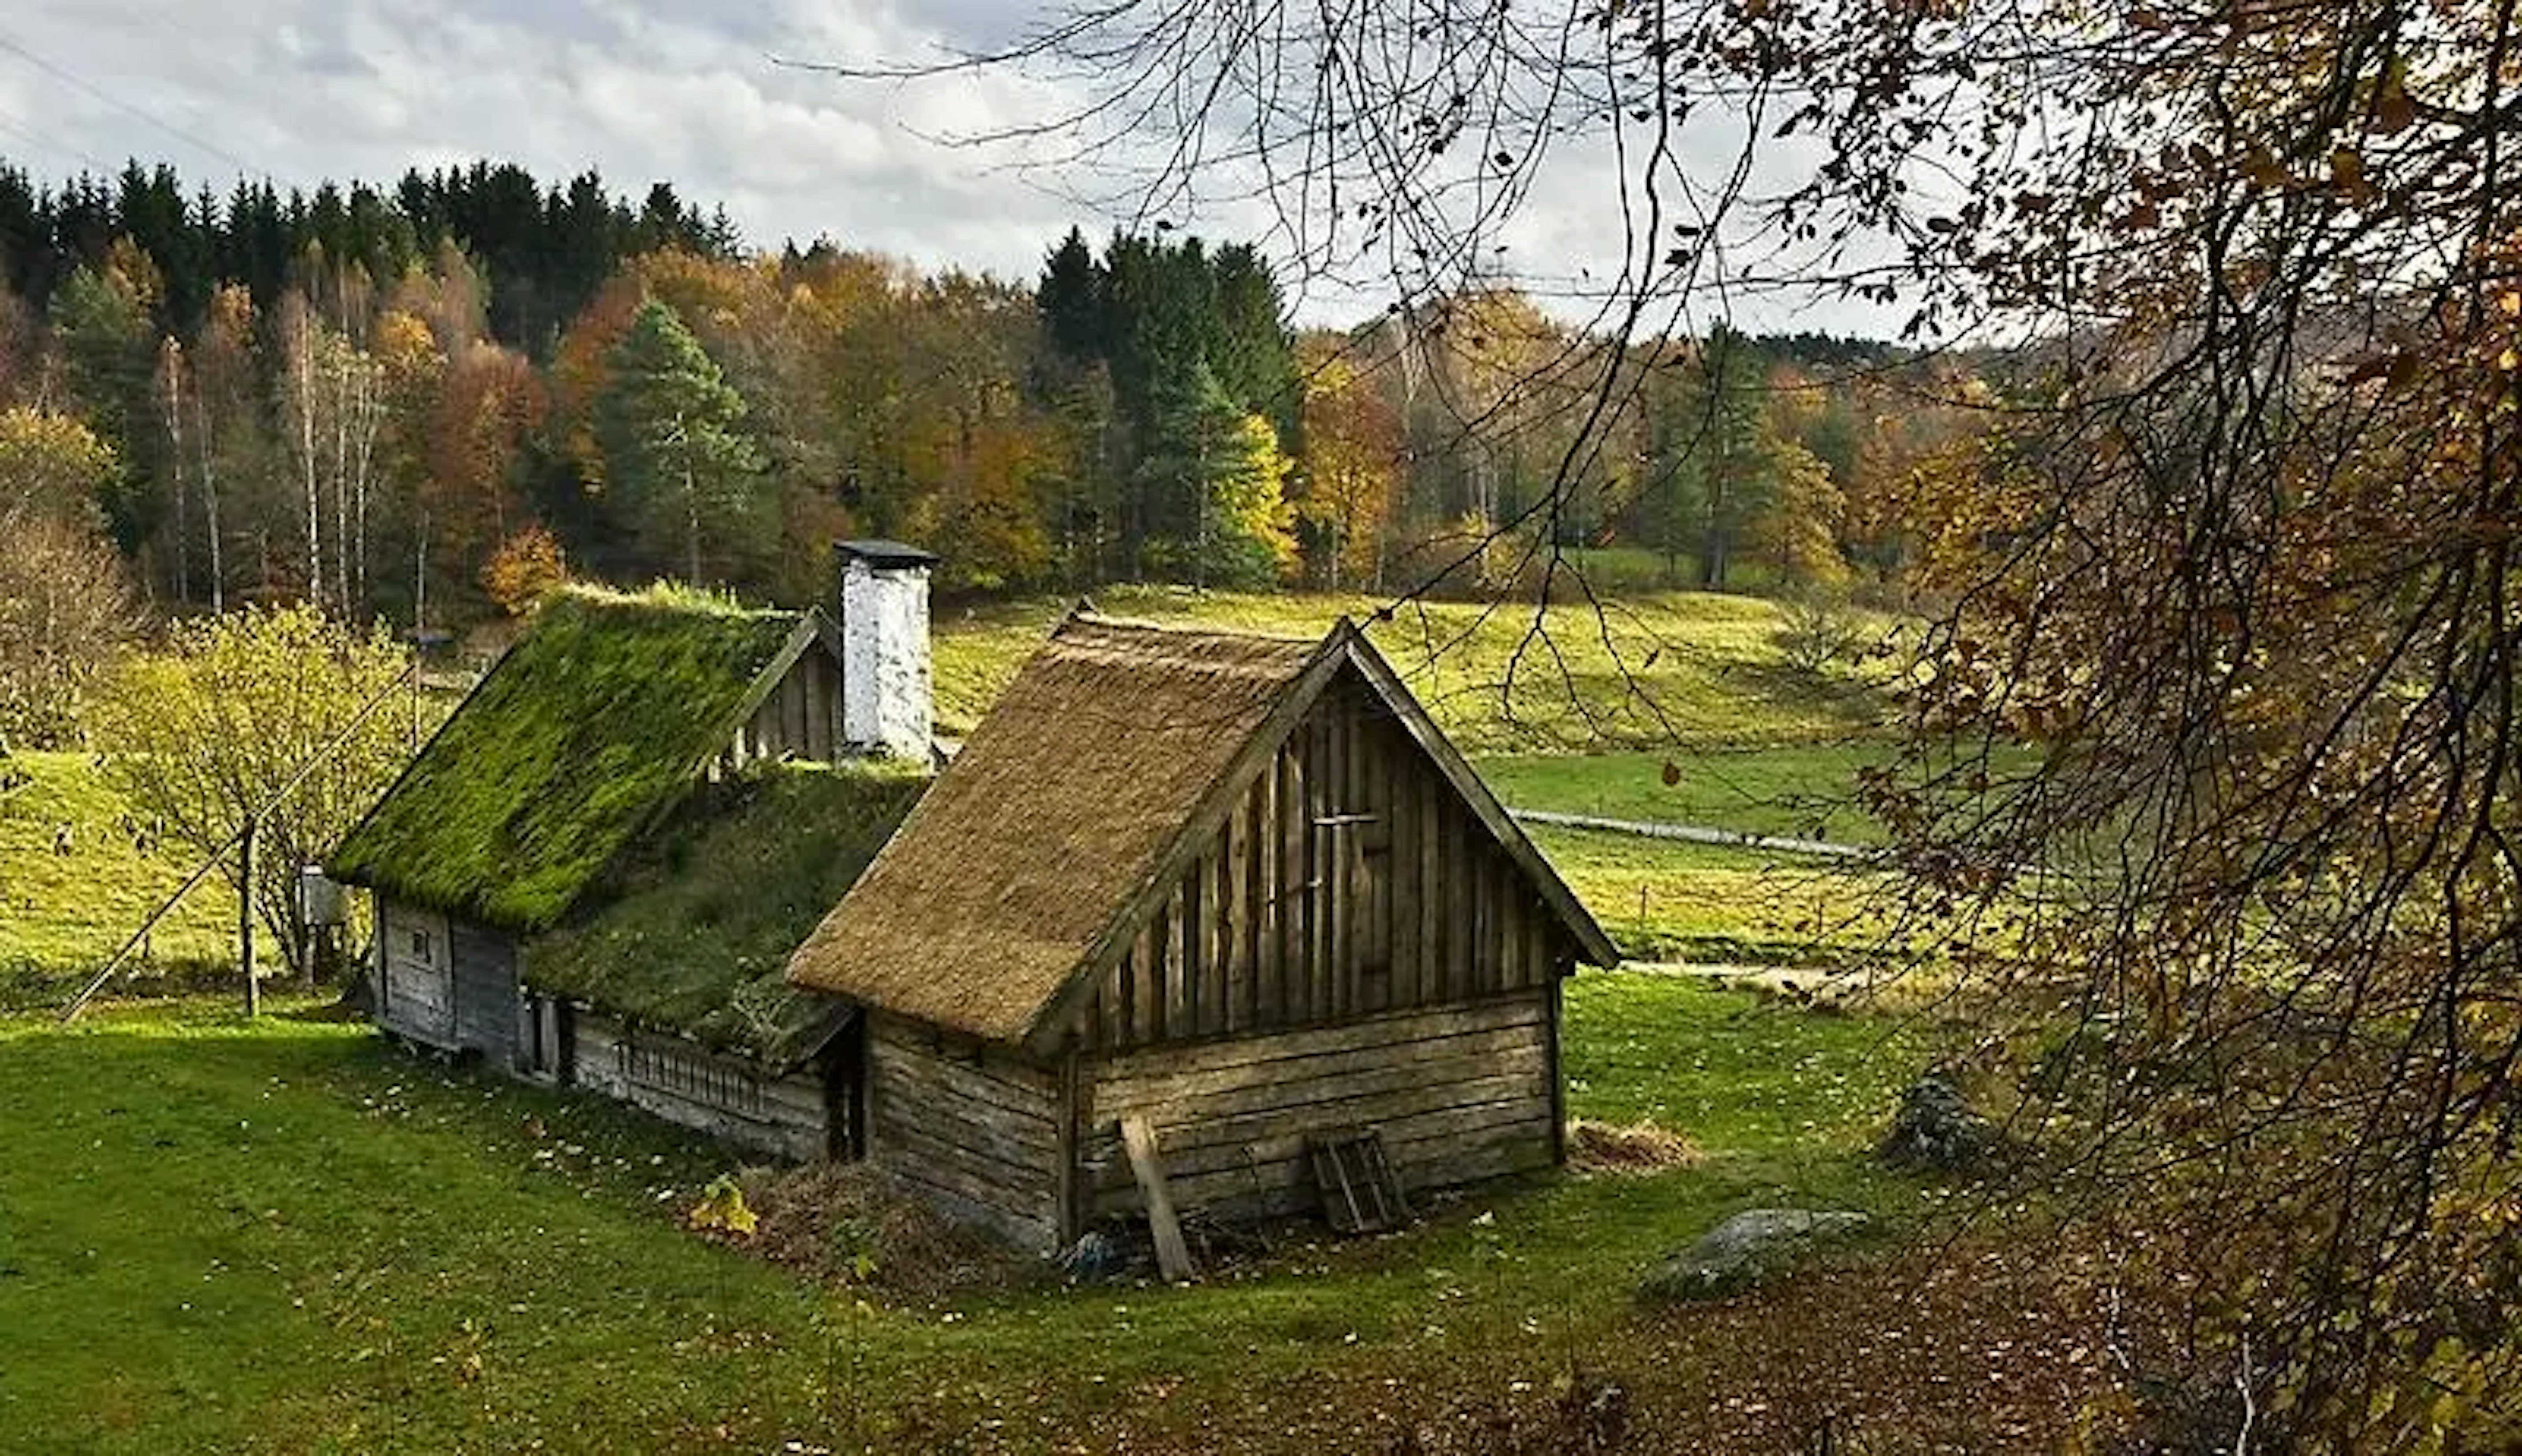 Sehr altes Bauernhaus auf einer Wiese mit Wald im Hintergrund